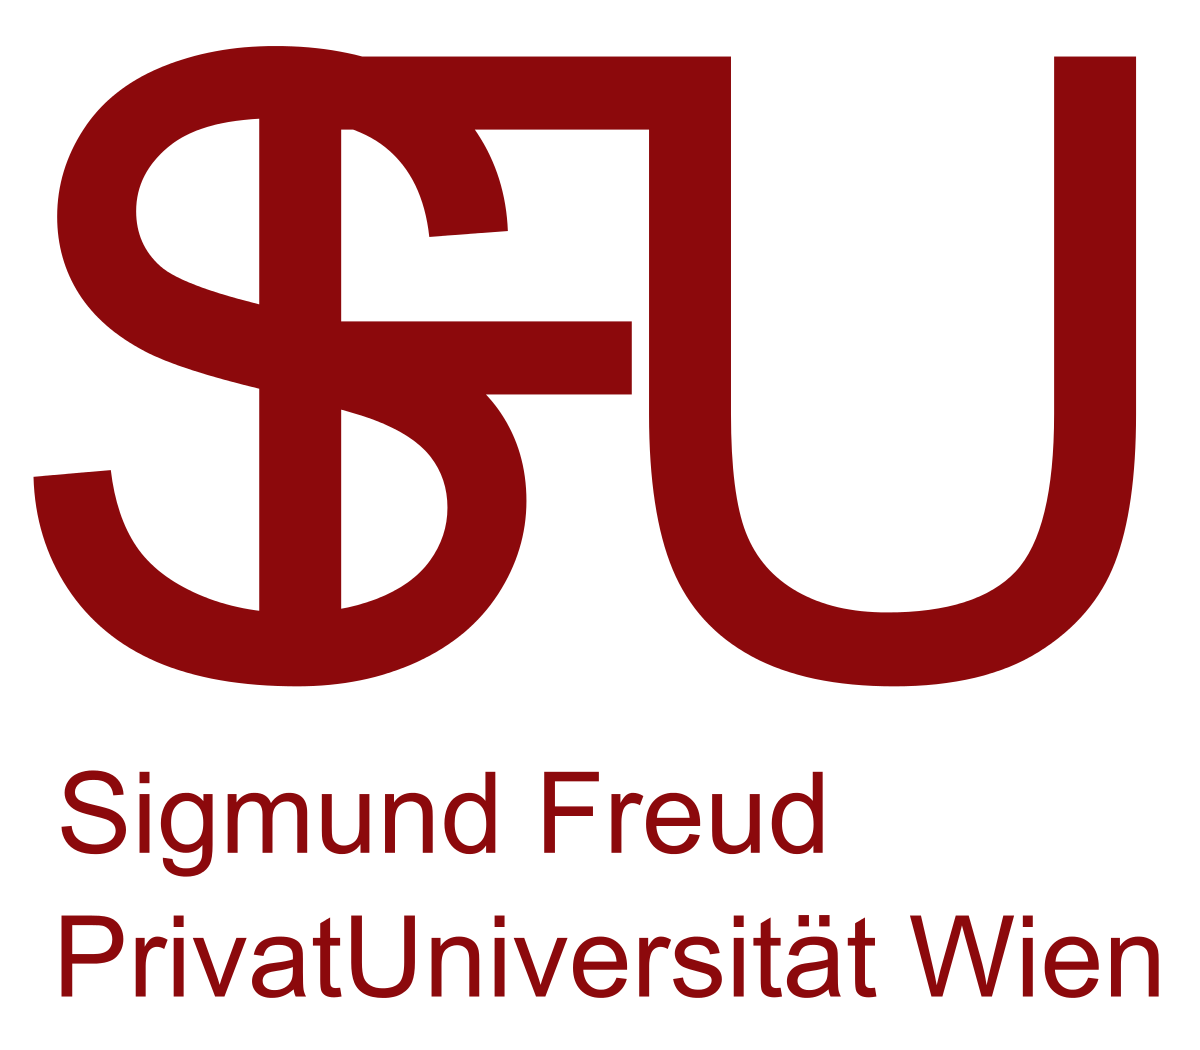 Vienna Logo - Sigmund Freud University Vienna